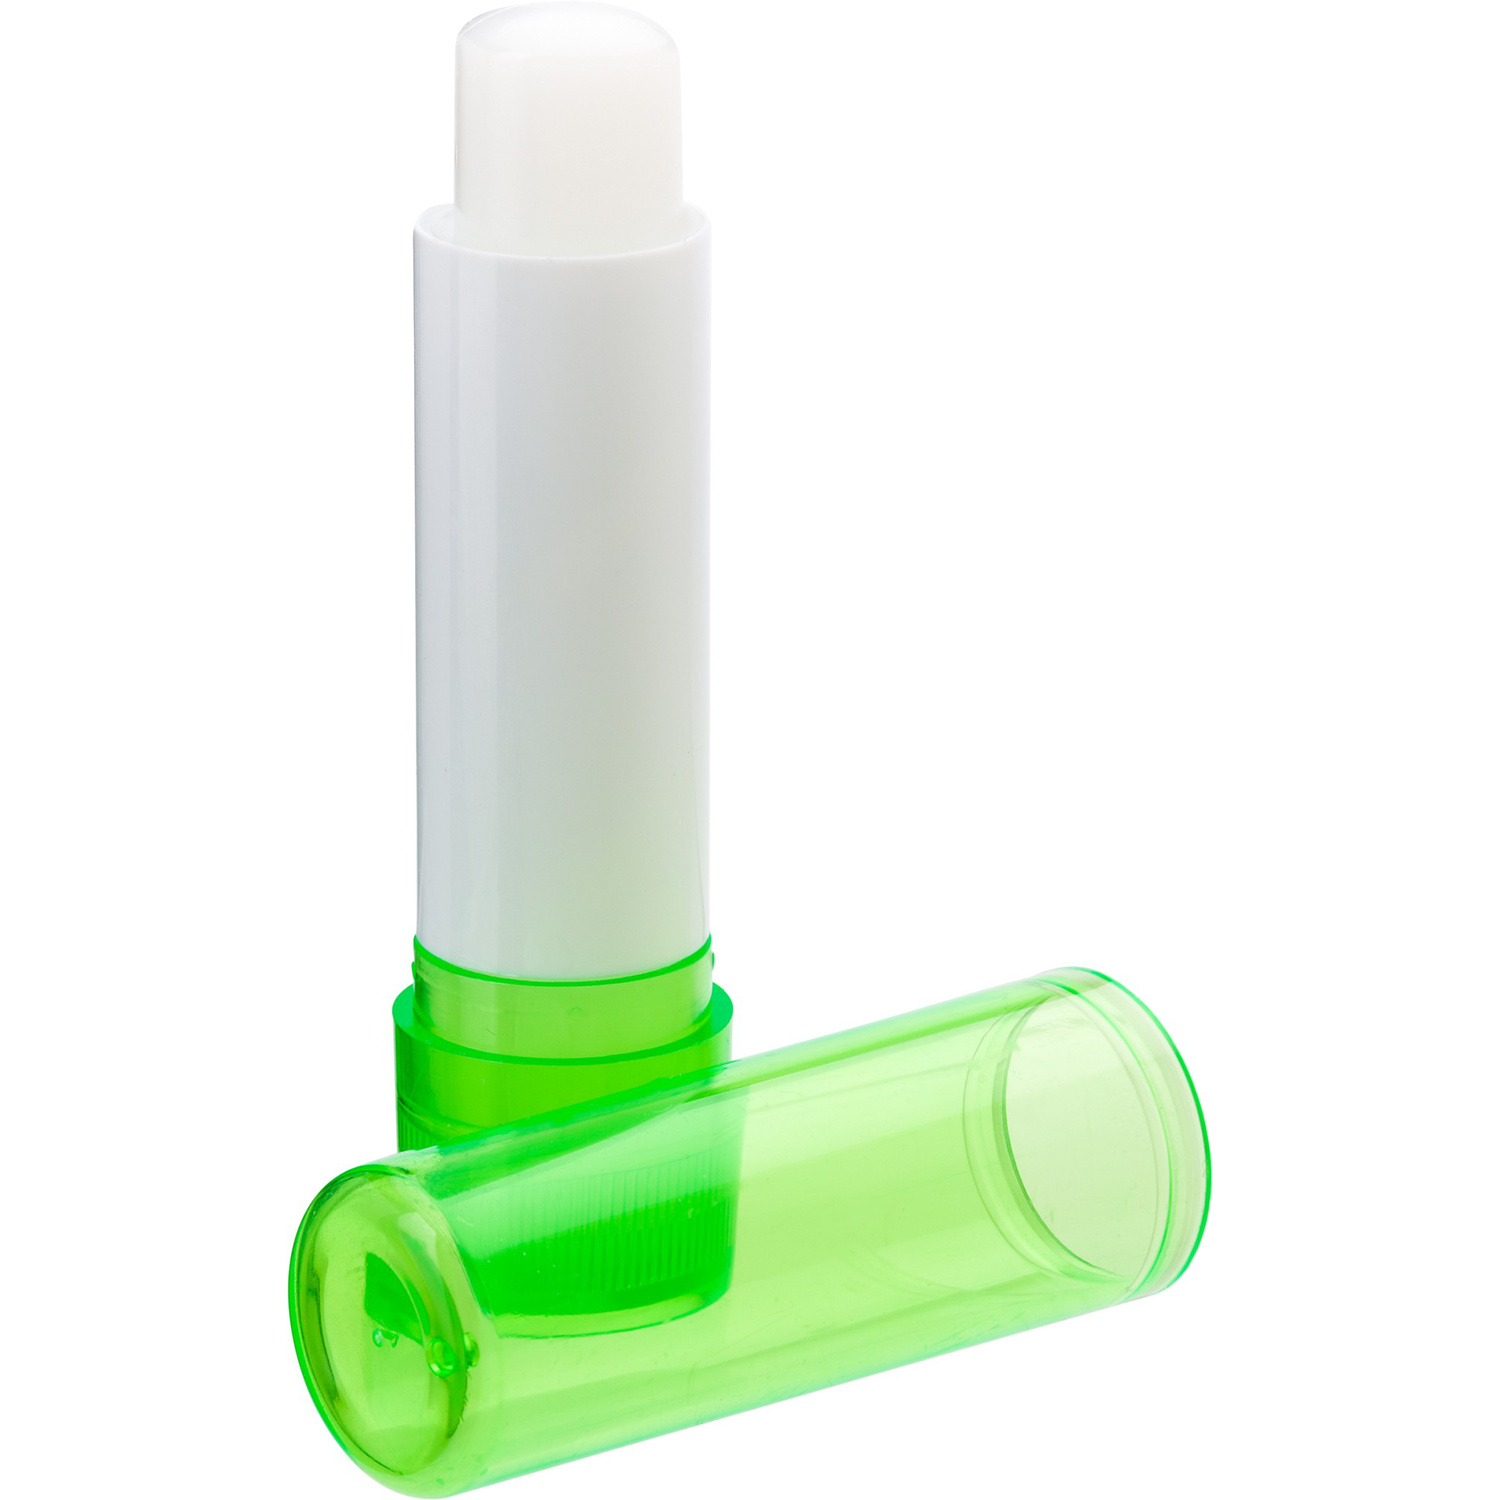 009534 029999999 3d090 ins pro01 fal - Coloured Transparent Lip Balm Stick